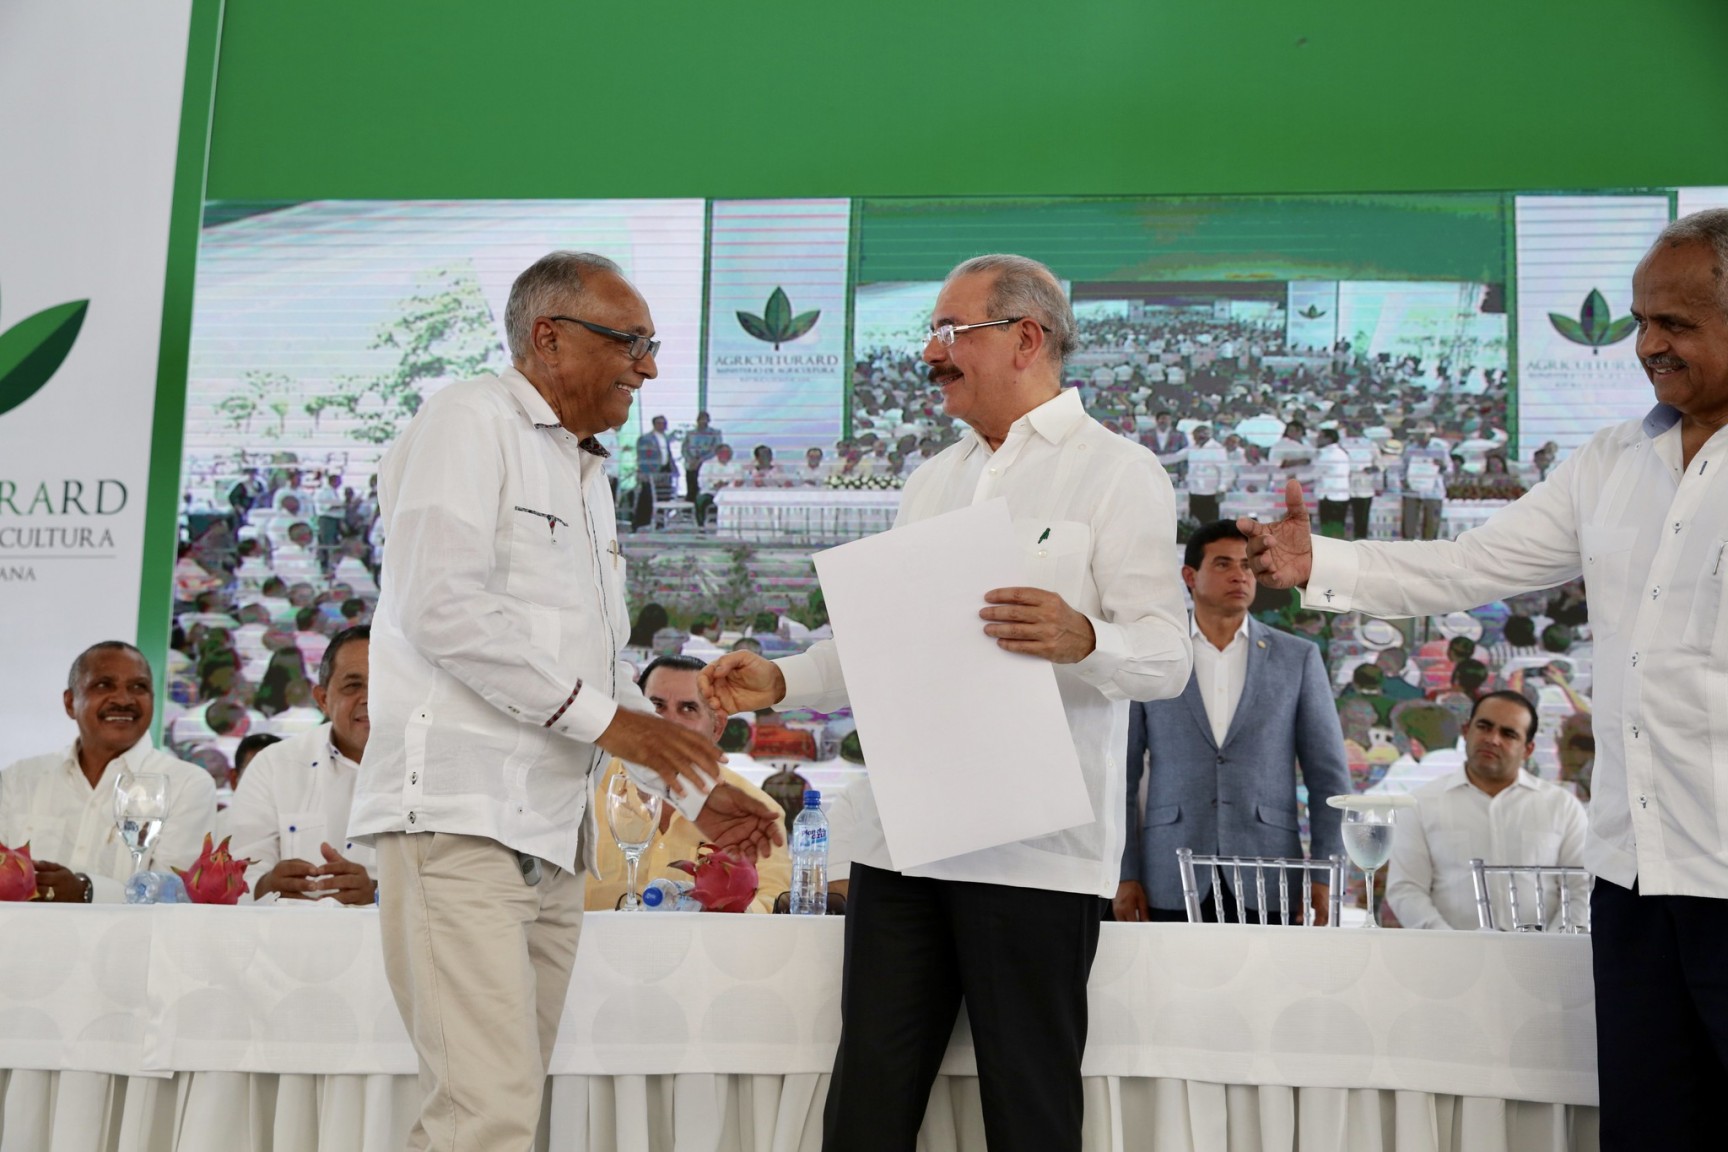 REPÚBLICA DOMINICANA: Cerca de 15 mil productores y campesinos celebran Día Nacional del Agricultor junto a Danilo Medina, el presidente más buena paga